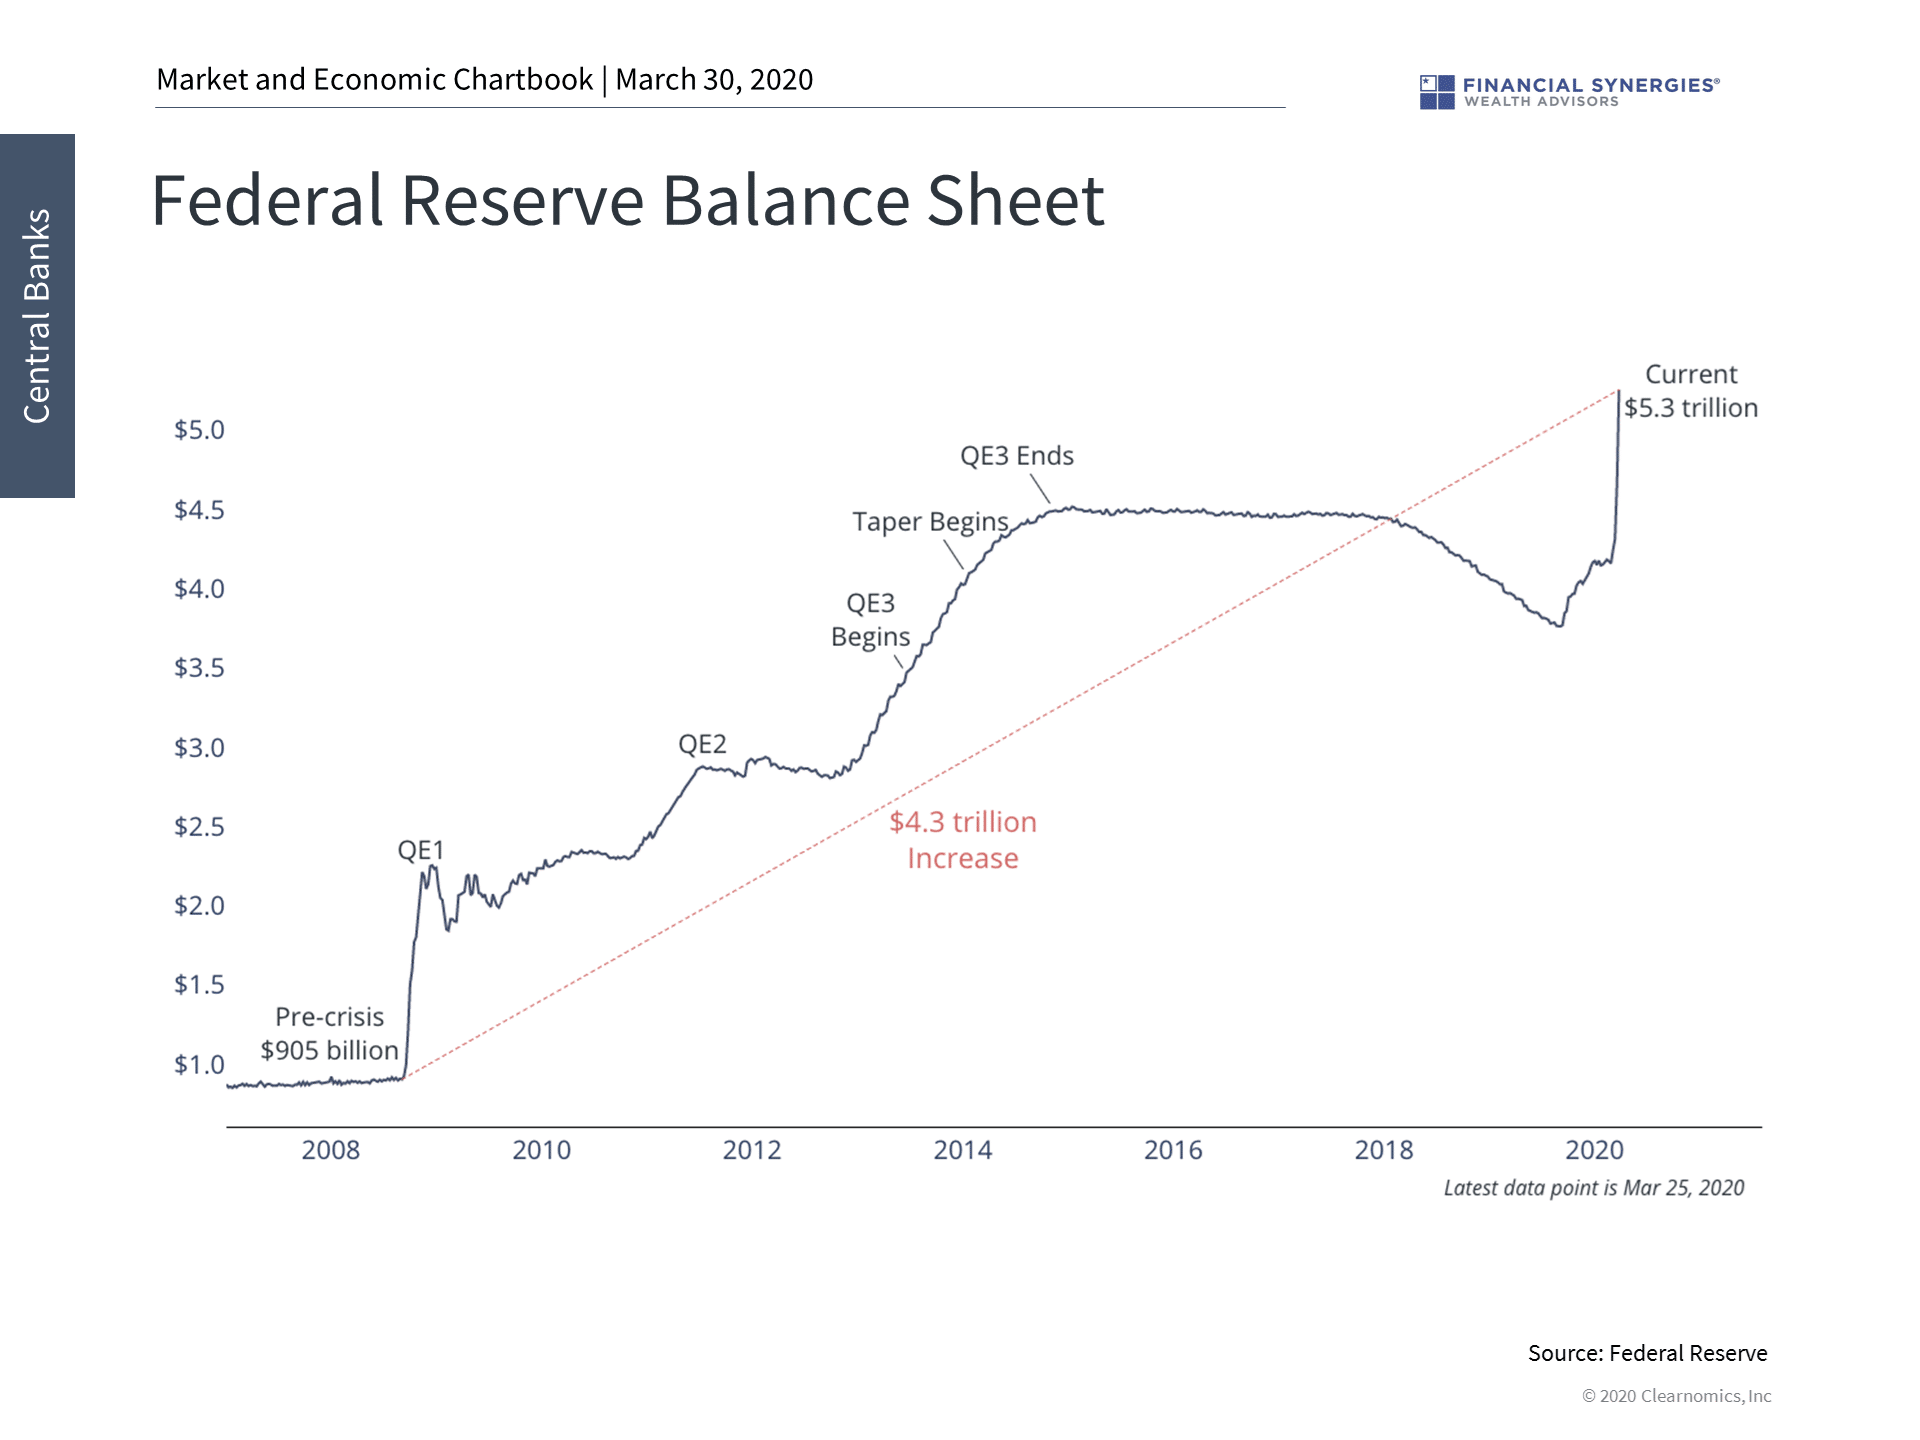 fed balance sheet